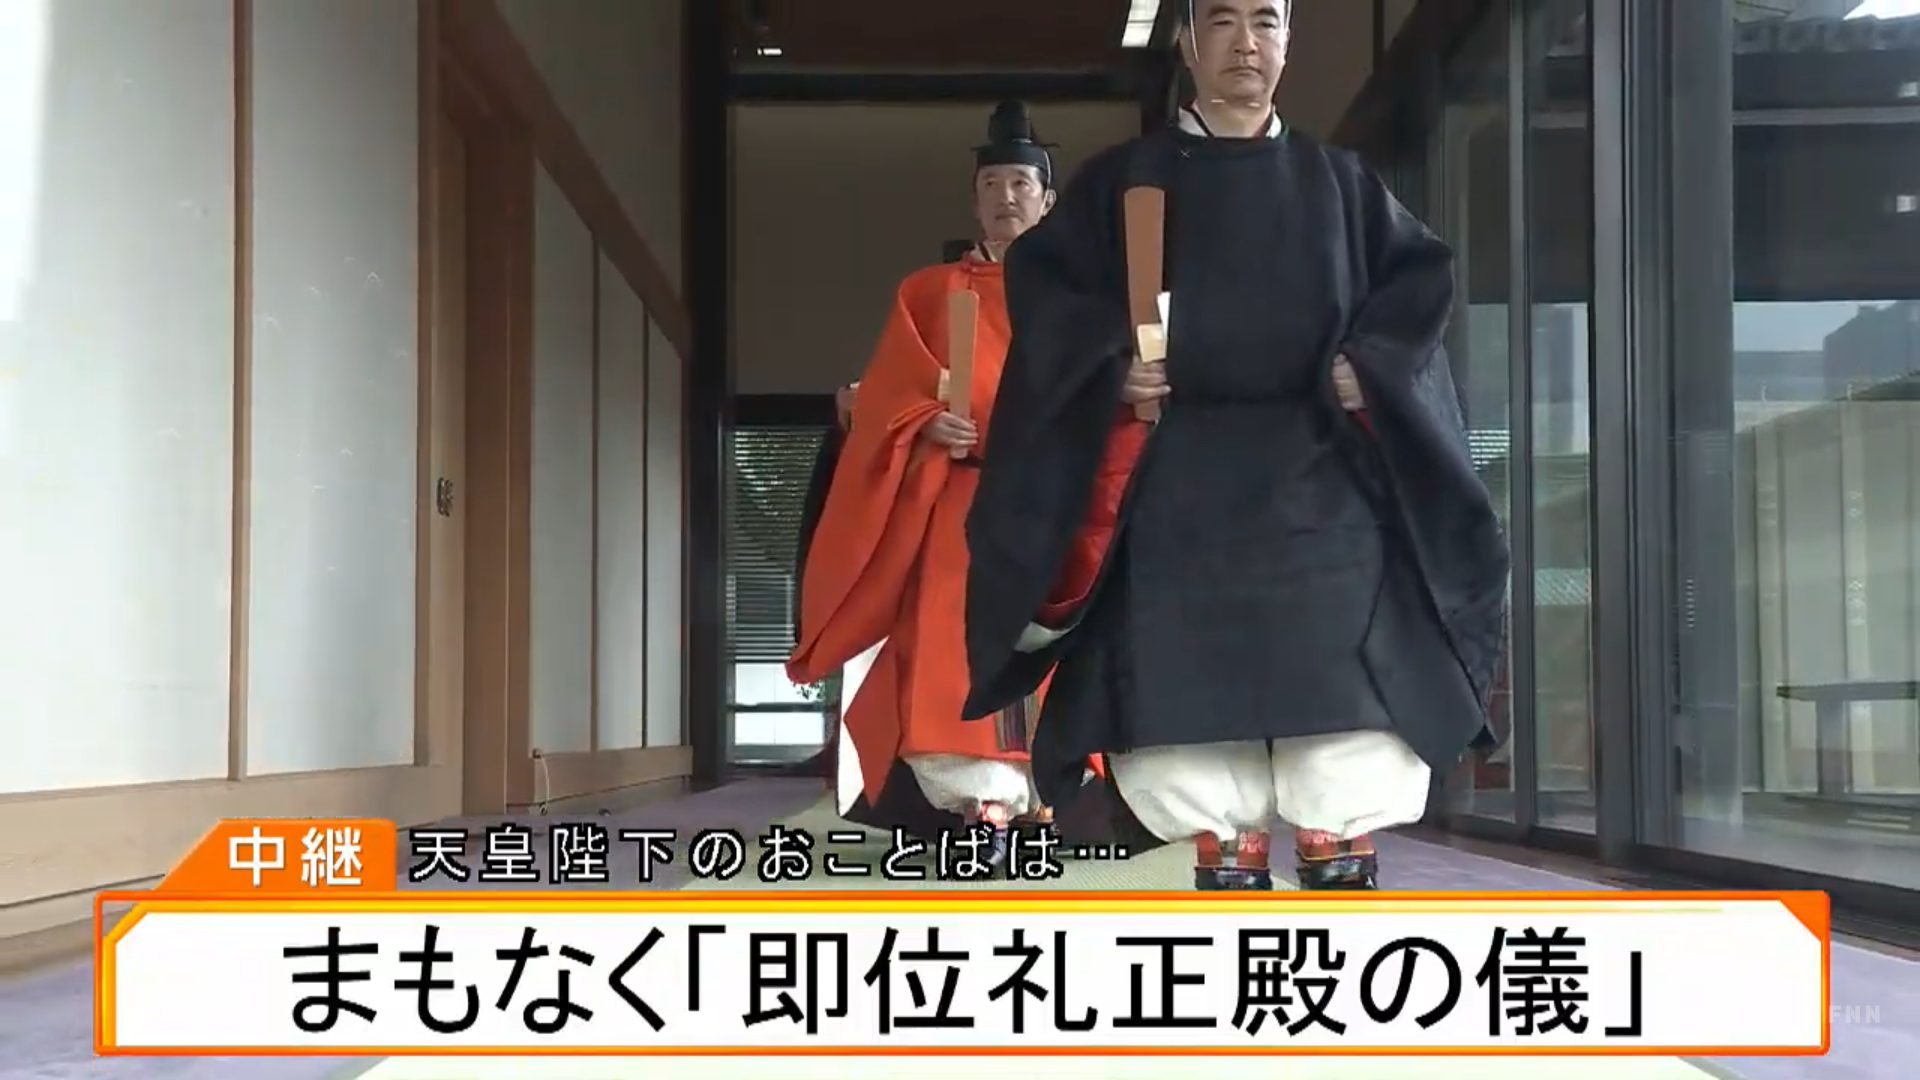 Nhật hoàng Naruhito trong bộ long bào màu cam, bước vào cung điện nhận chức